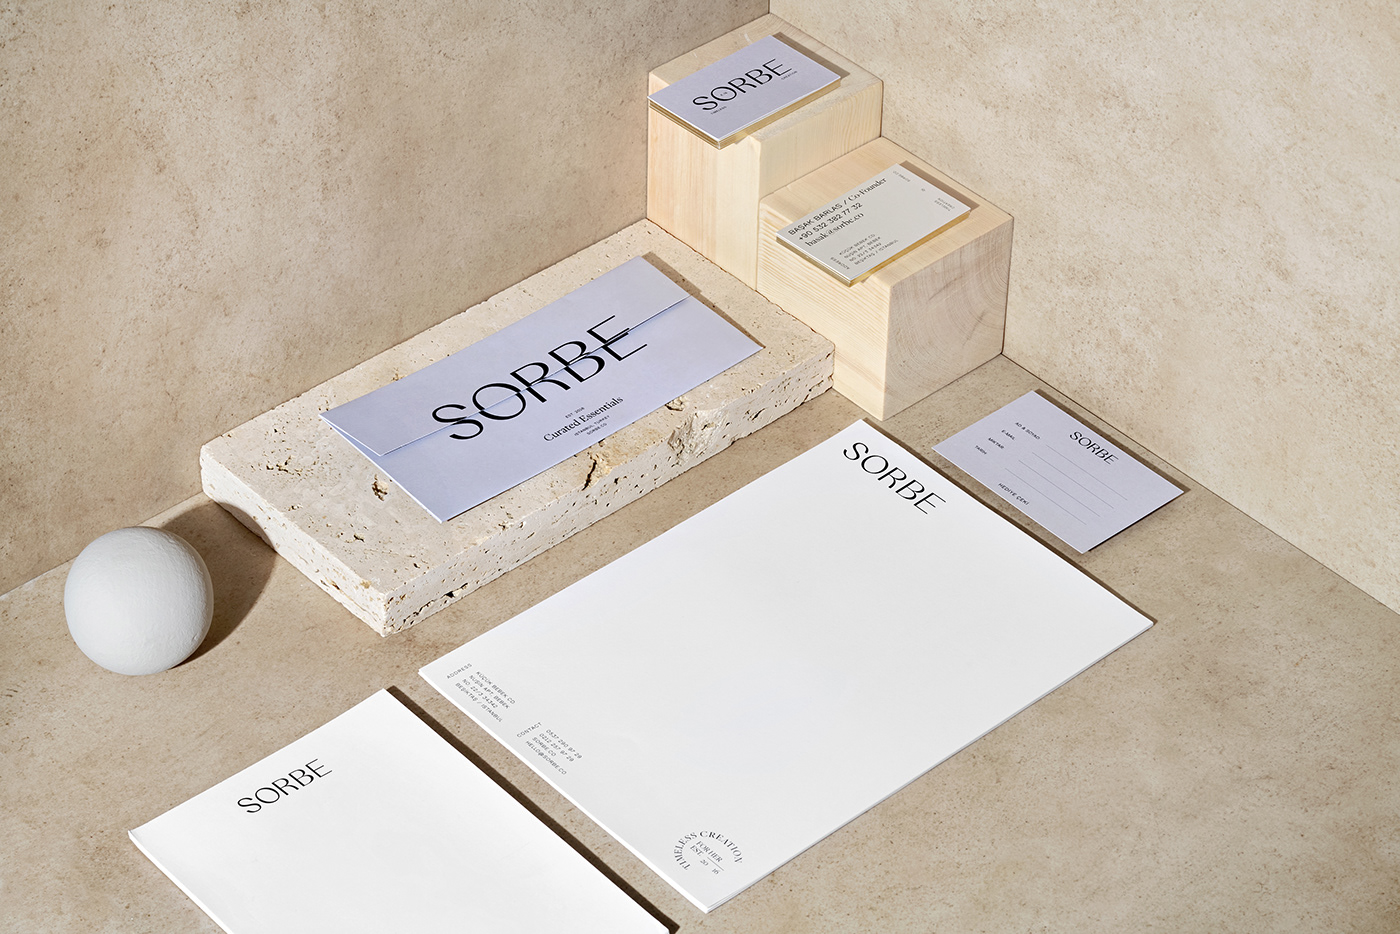 Packaging example #305: SORBE - Branding & Packaging